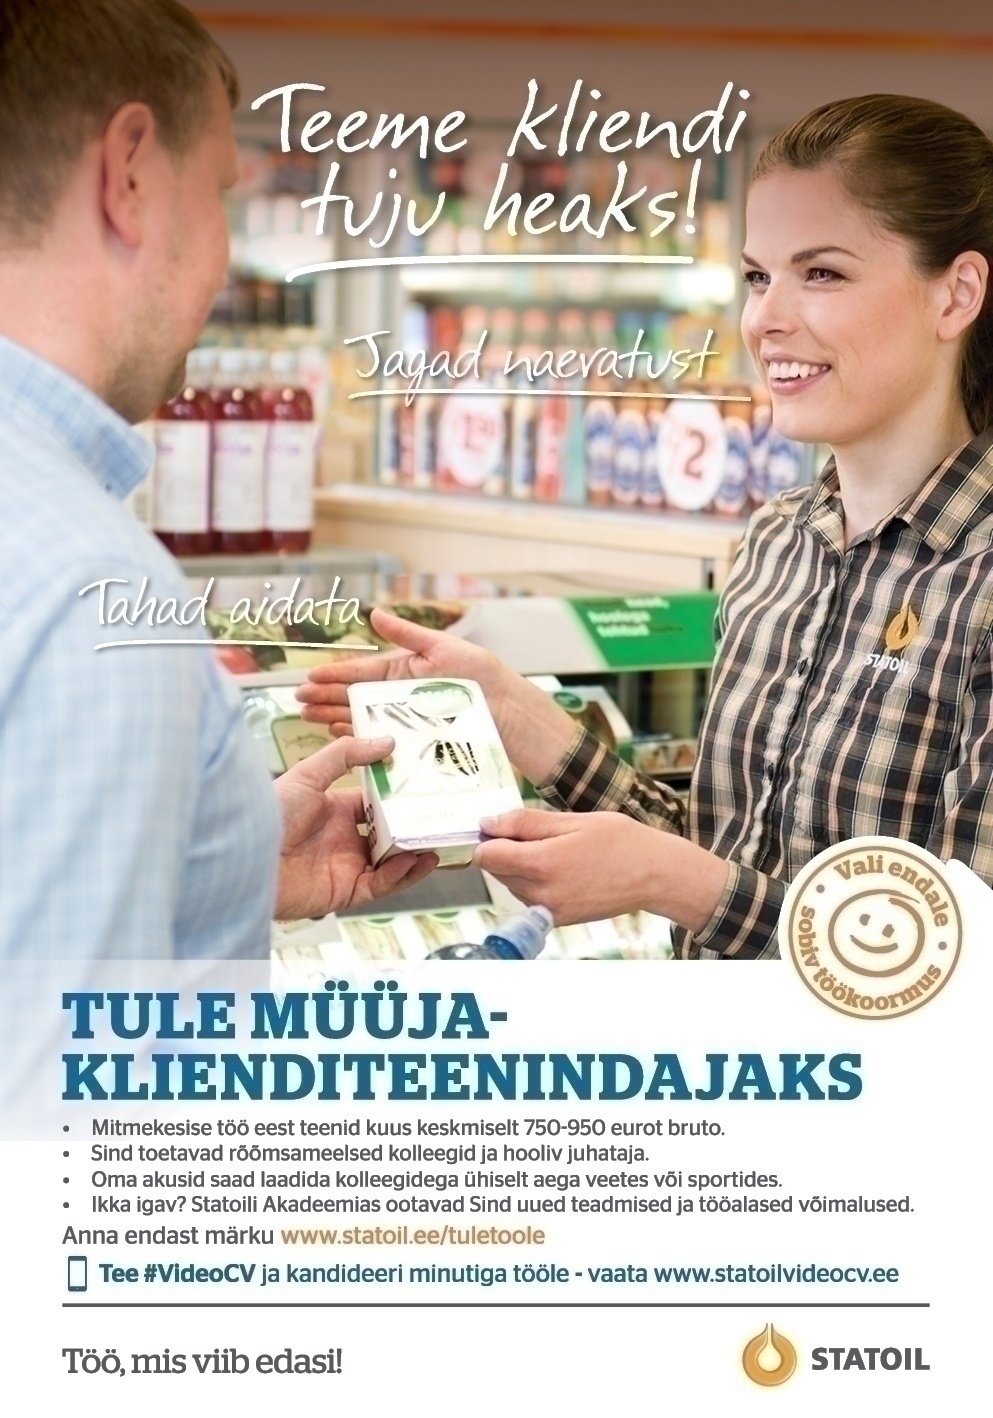 Circle K Eesti AS Müüja-klienditeenindaja Viimsi ja Petrooleumi teenindusjaama